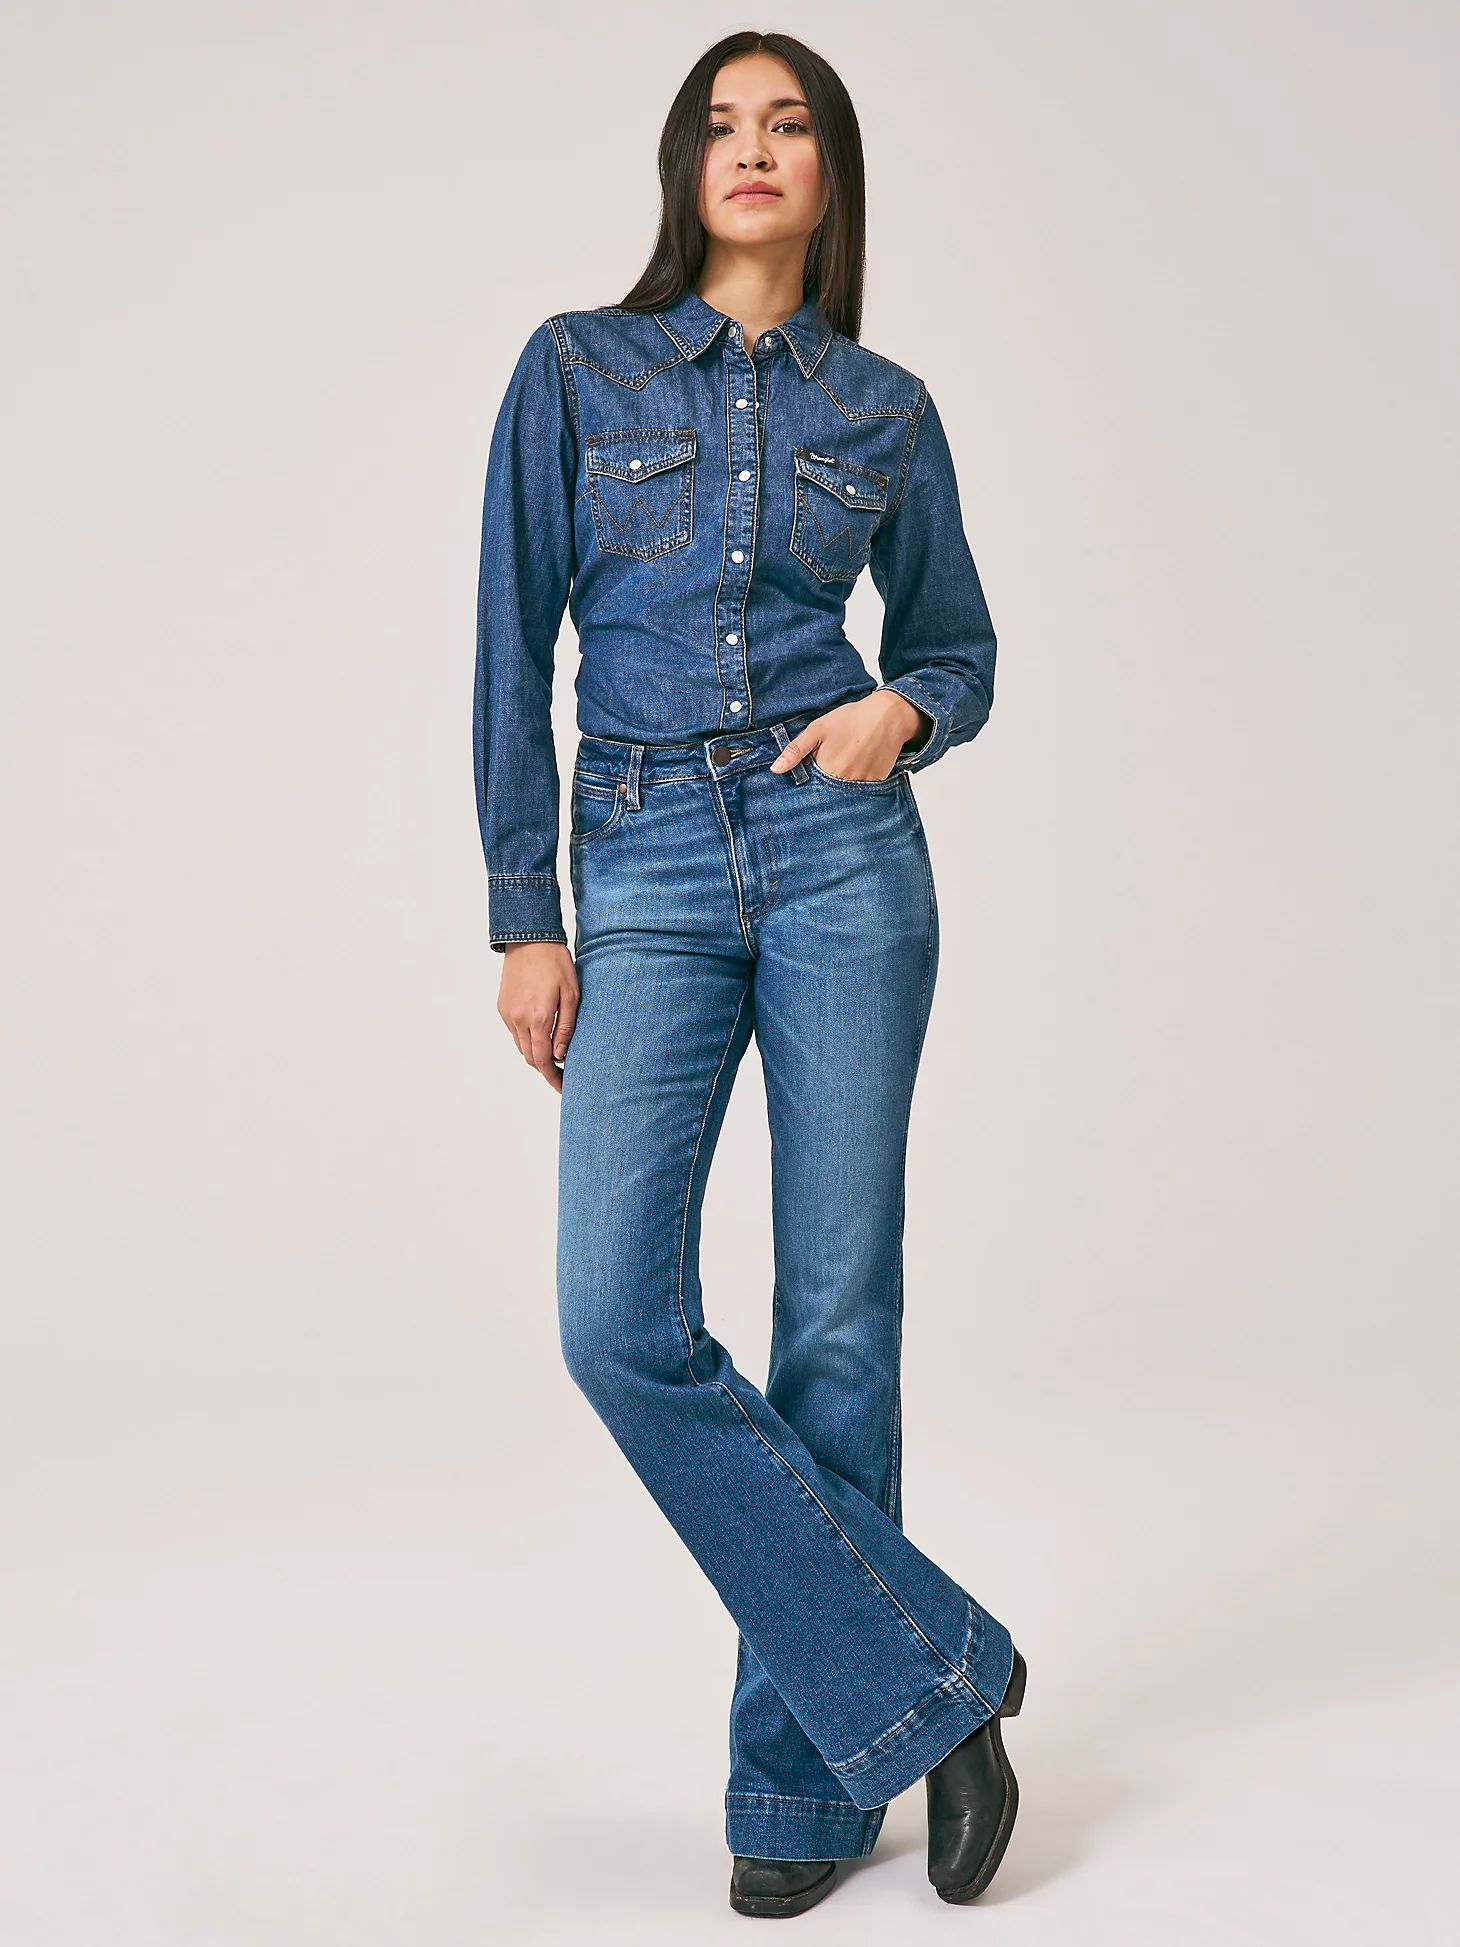 Women's Wrangler Retro® Bailey High Rise Trouser Jean in Bessie | Wrangler